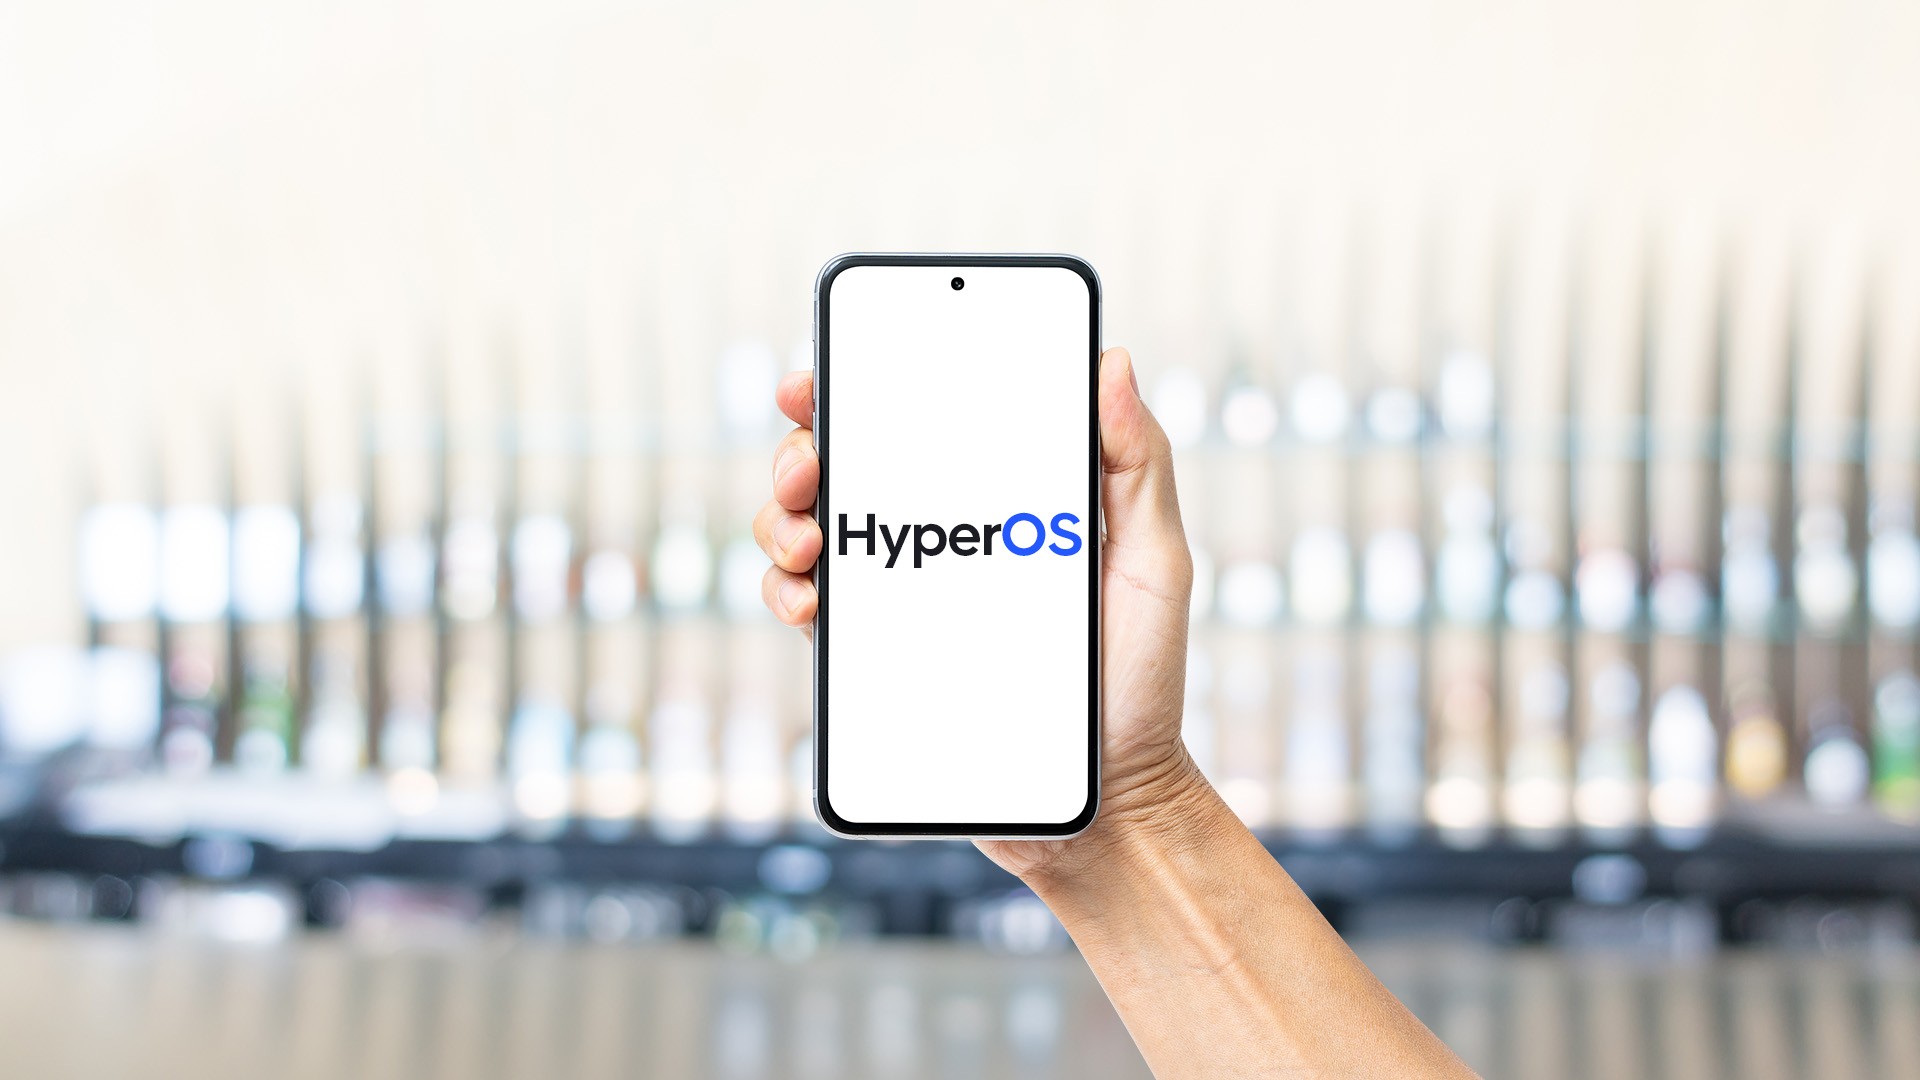 80 گوشی هوشمند واجد شرایط شیائومی برای دریافت HyperOS
